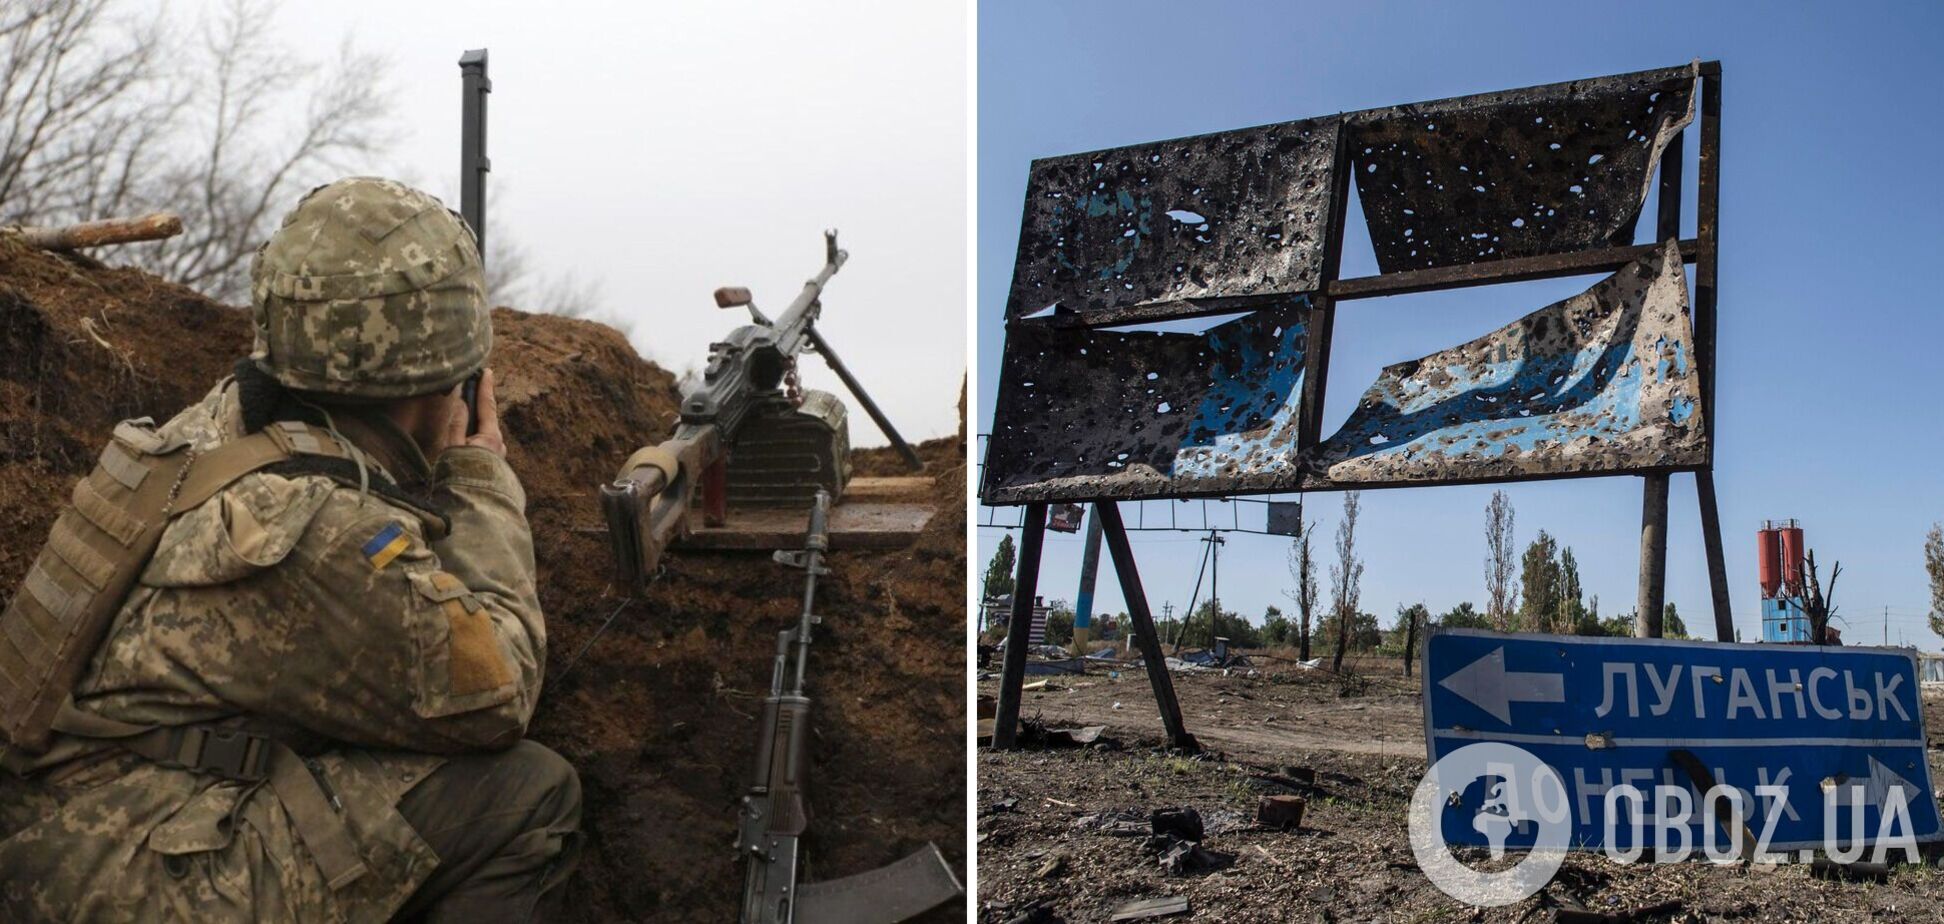 Три украинских воина ранены на Донбассе: ВСУ открыли огонь в ответ